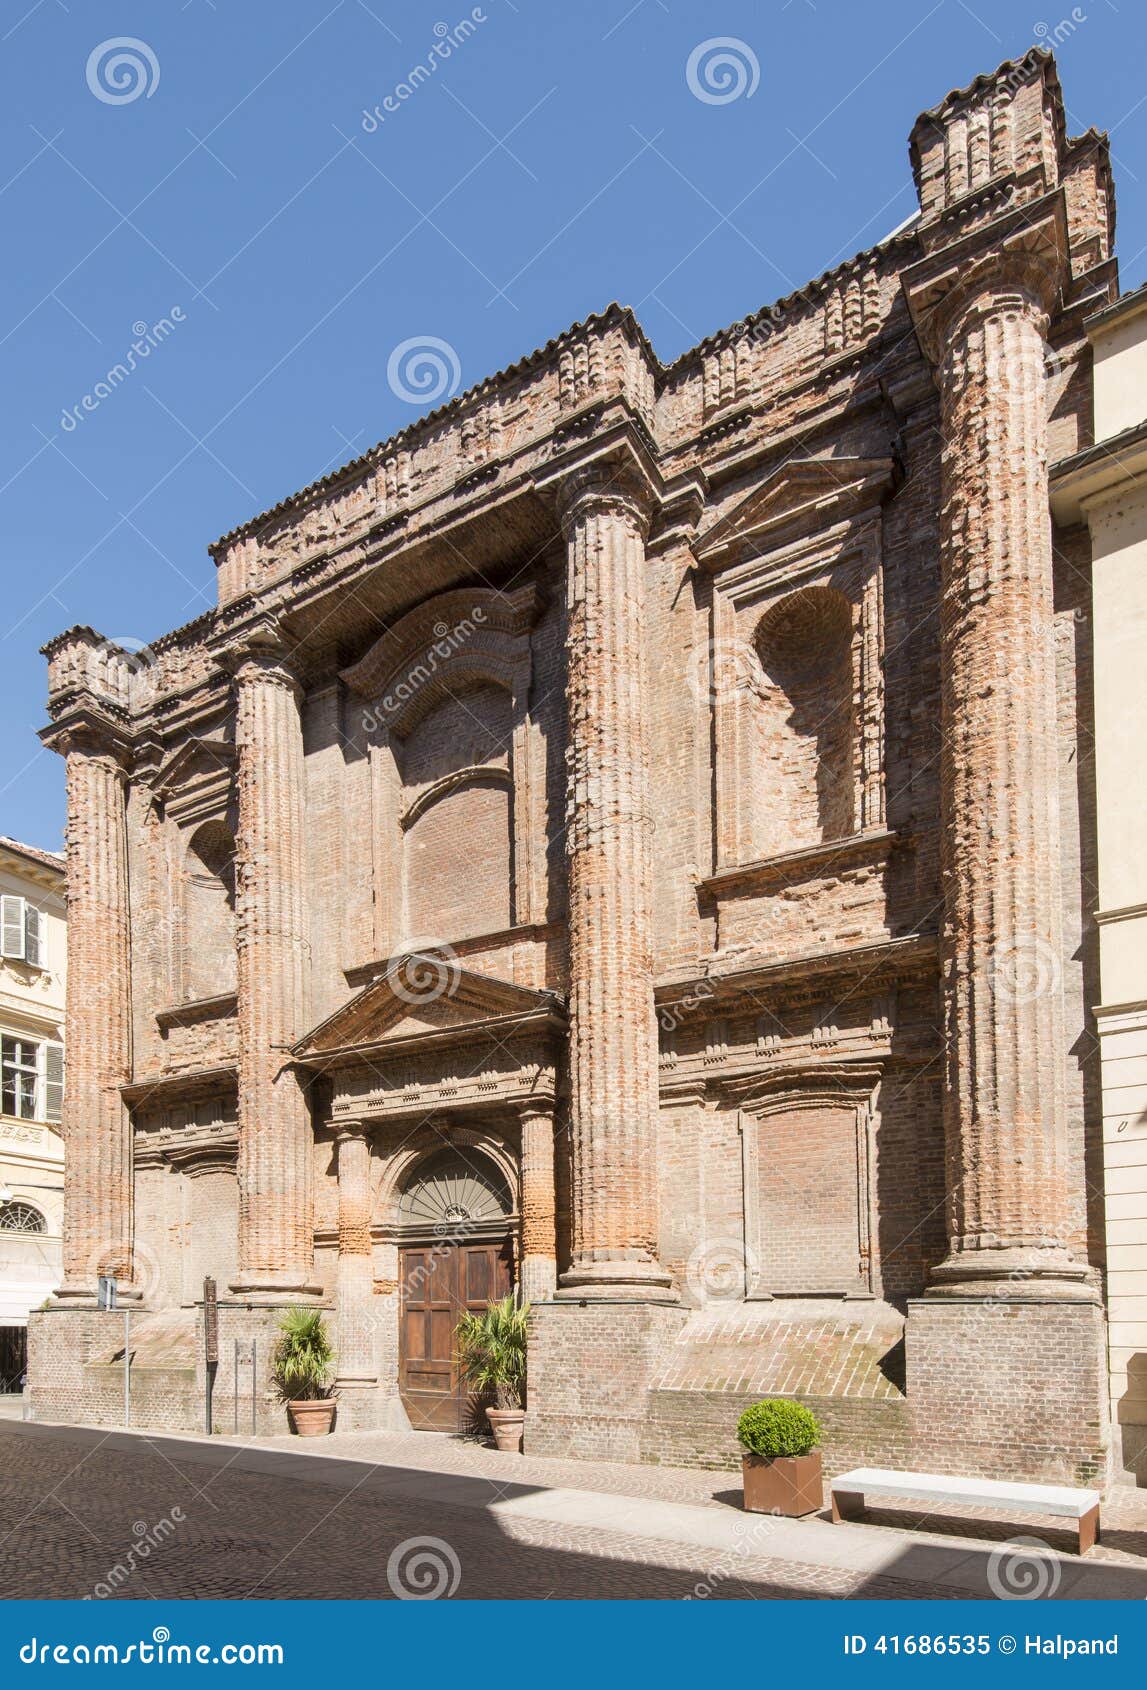 old neoclassic building, casale monferrato, italy